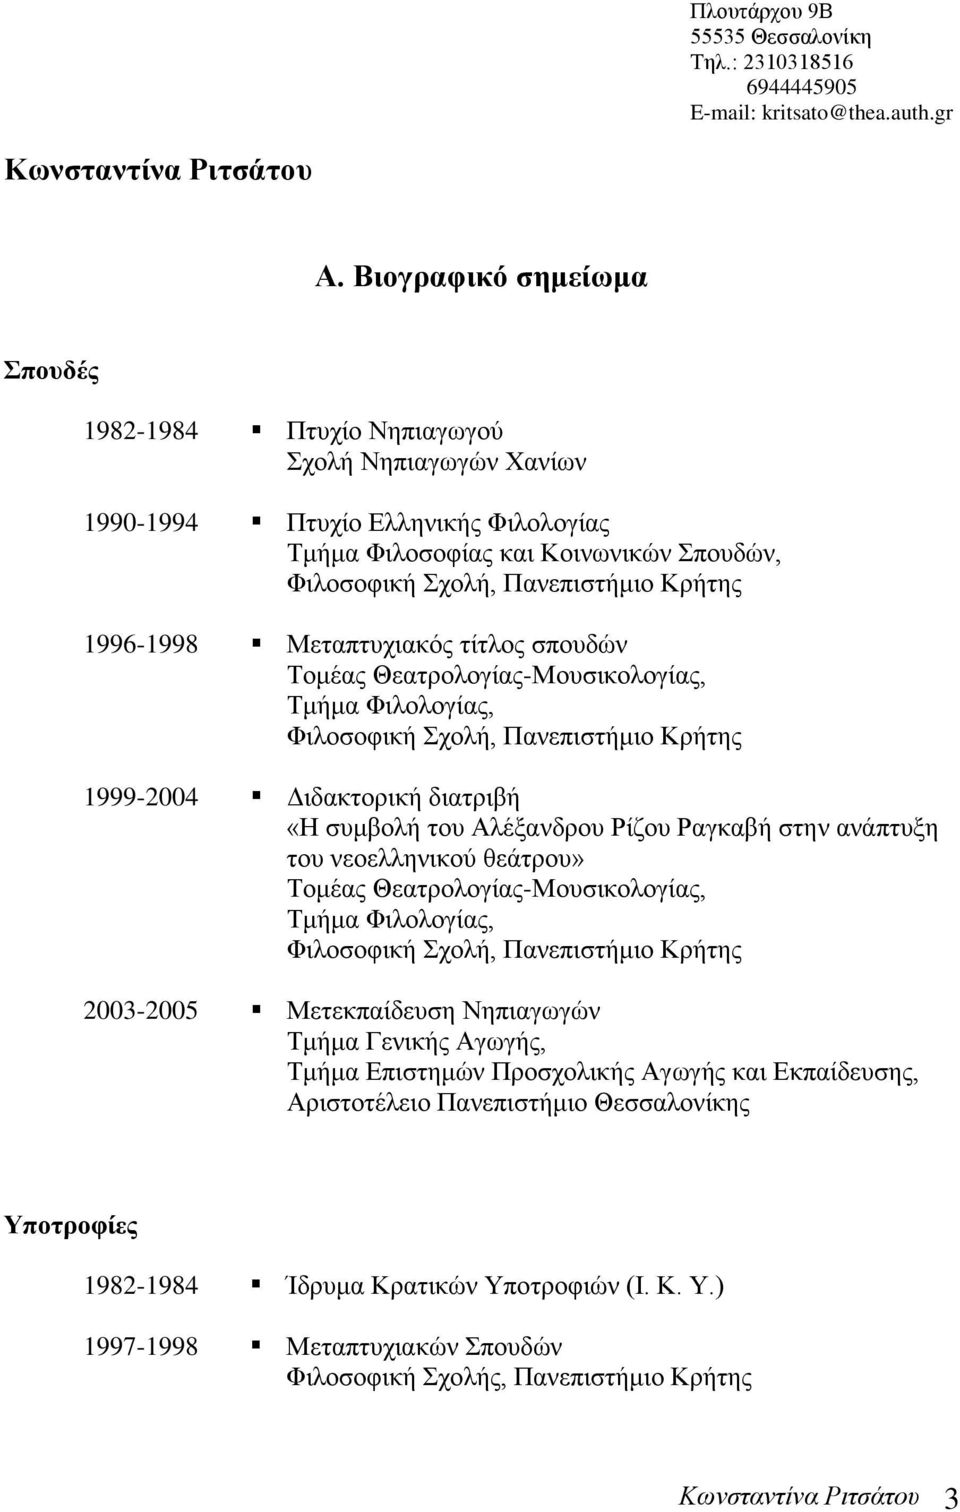 1996-1998 Μεταπτυχιακός τίτλος σπουδών Τομέας Θεατρολογίας-Μουσικολογίας, Τμήμα Φιλολογίας, Φιλοσοφική Σχολή, Πανεπιστήμιο Κρήτης 1999-2004 Διδακτορική διατριβή «Η συμβολή του Αλέξανδρου Ρίζου